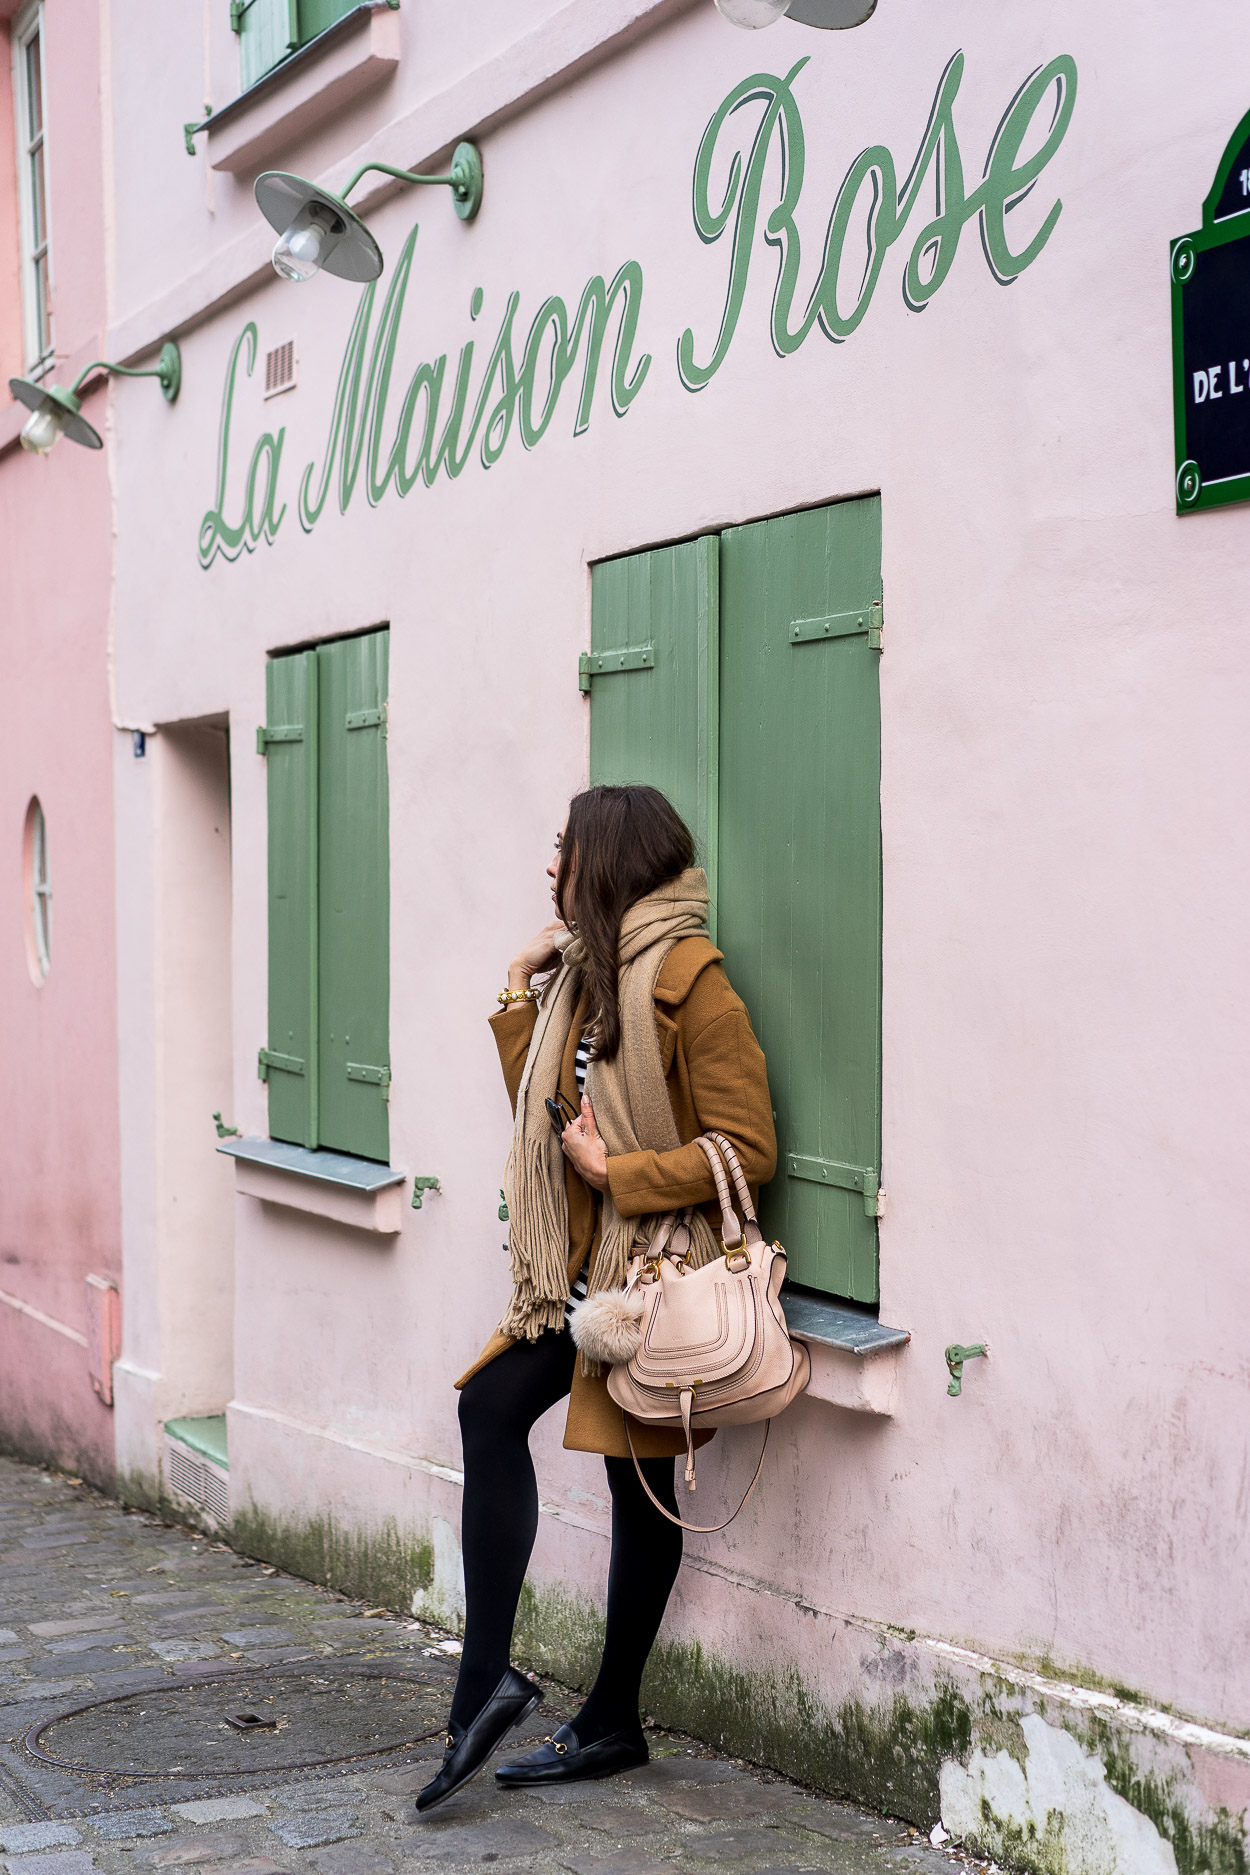 AGlamLifestyle blogger Amanda visits La Maison Rose cafe